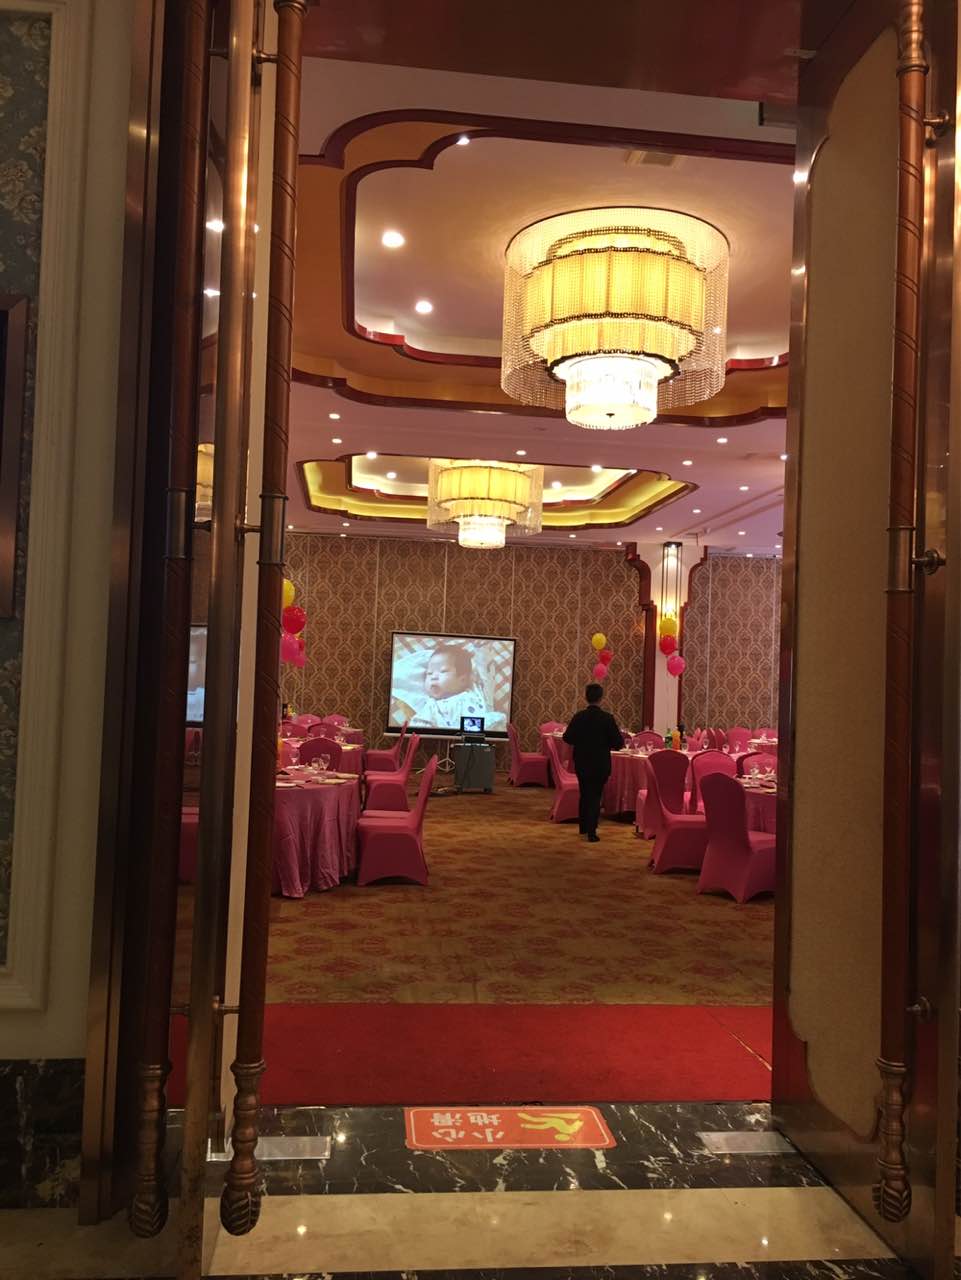 石浦大酒店婚宴预订图片